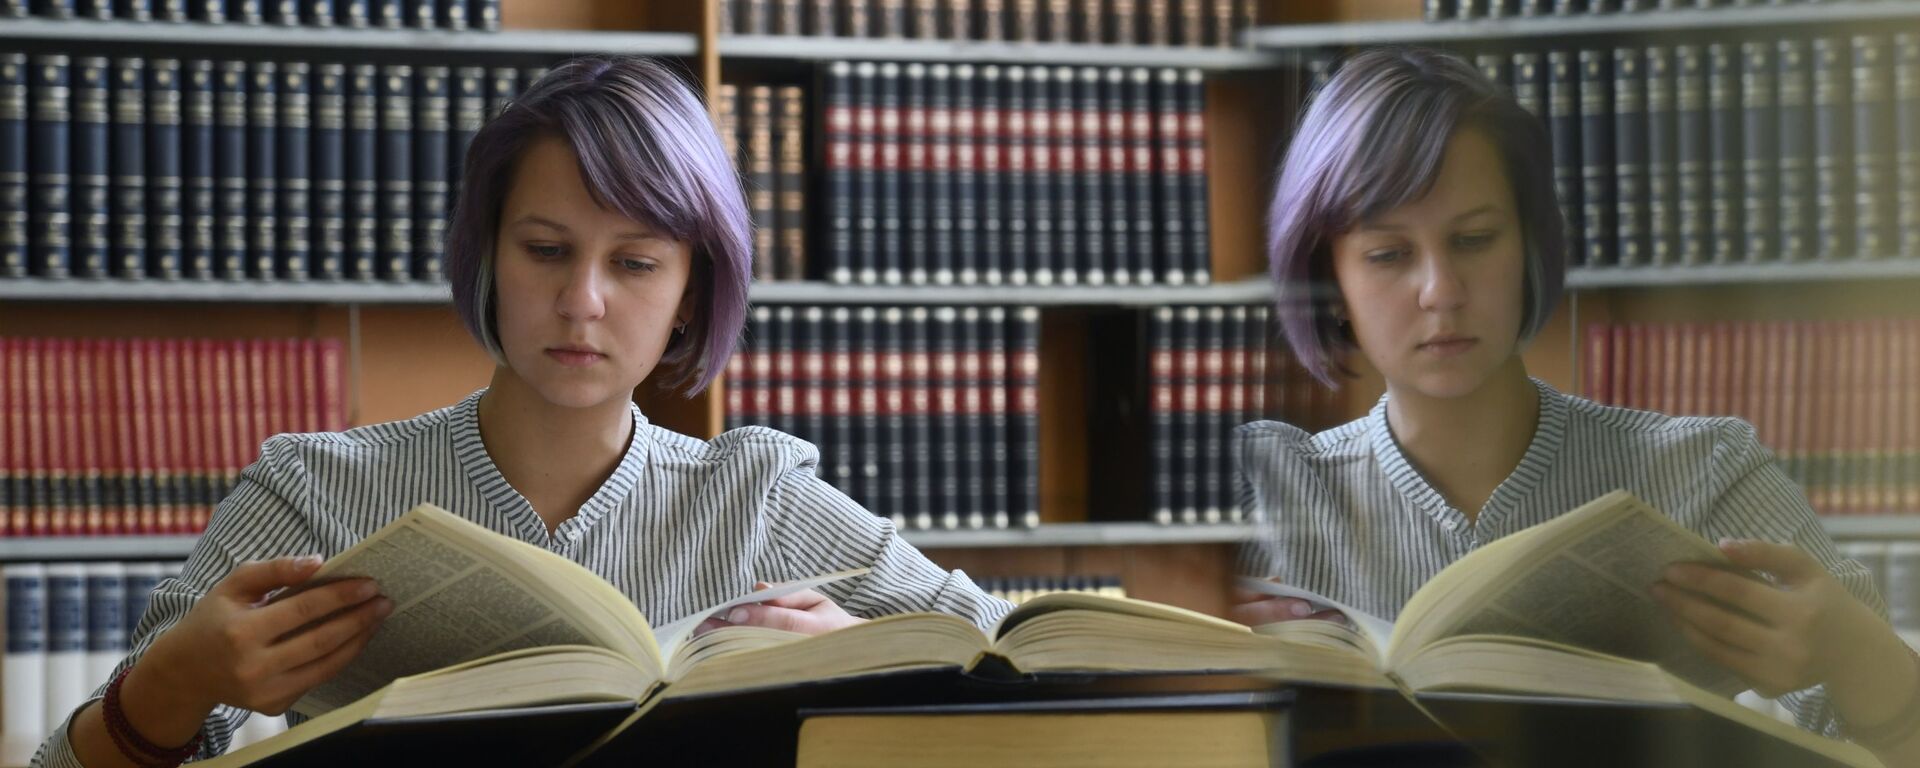 Девушка читает книгу в  библиотеке  - Sputnik Грузия, 1920, 29.01.2021